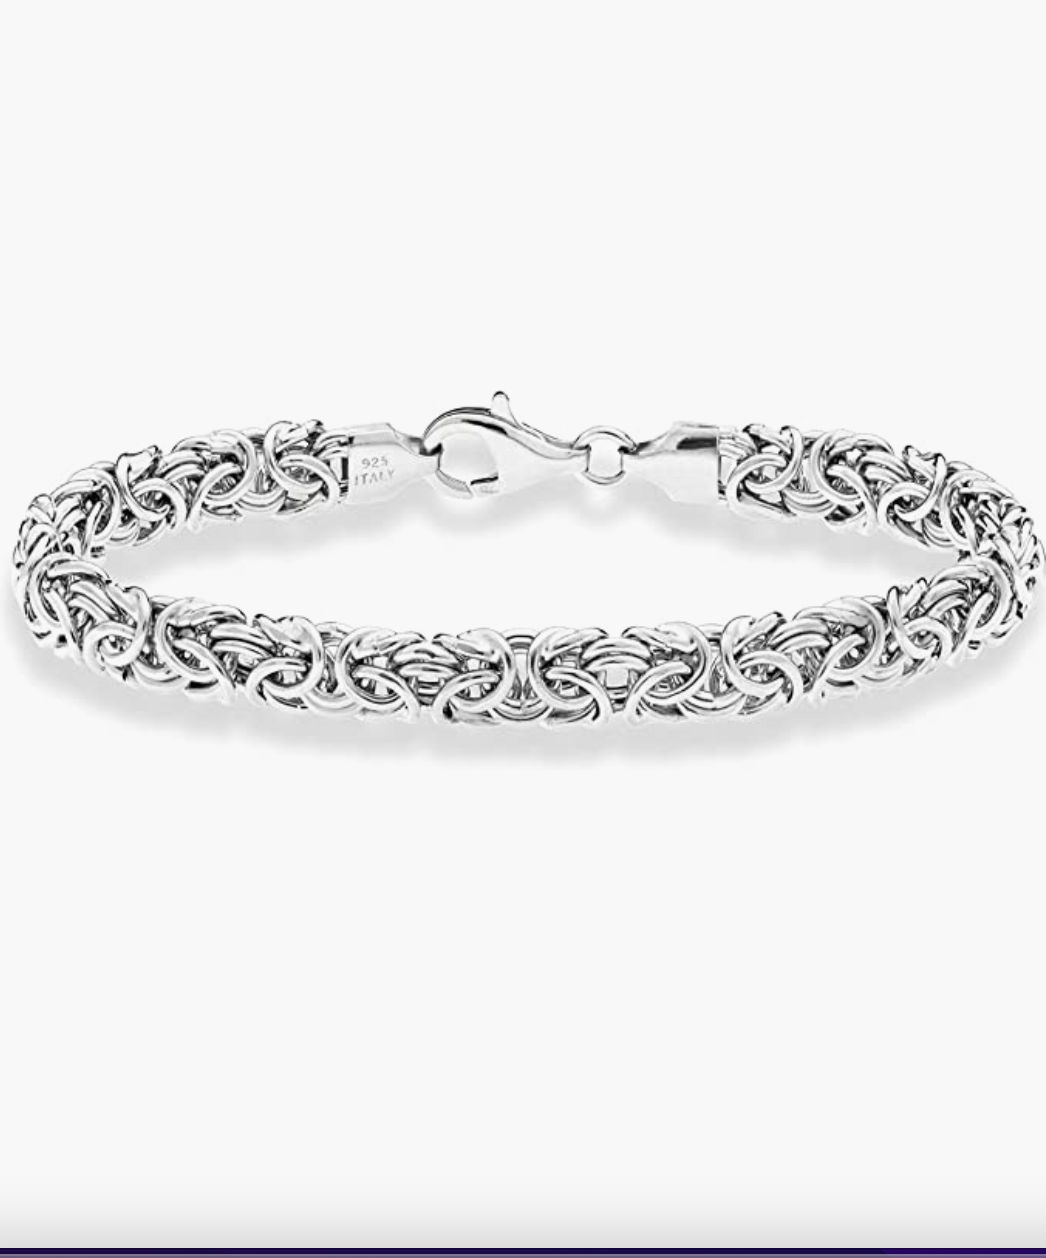 Miabella 925 Sterling Silver Italian Byzantine Bracelet for Women,